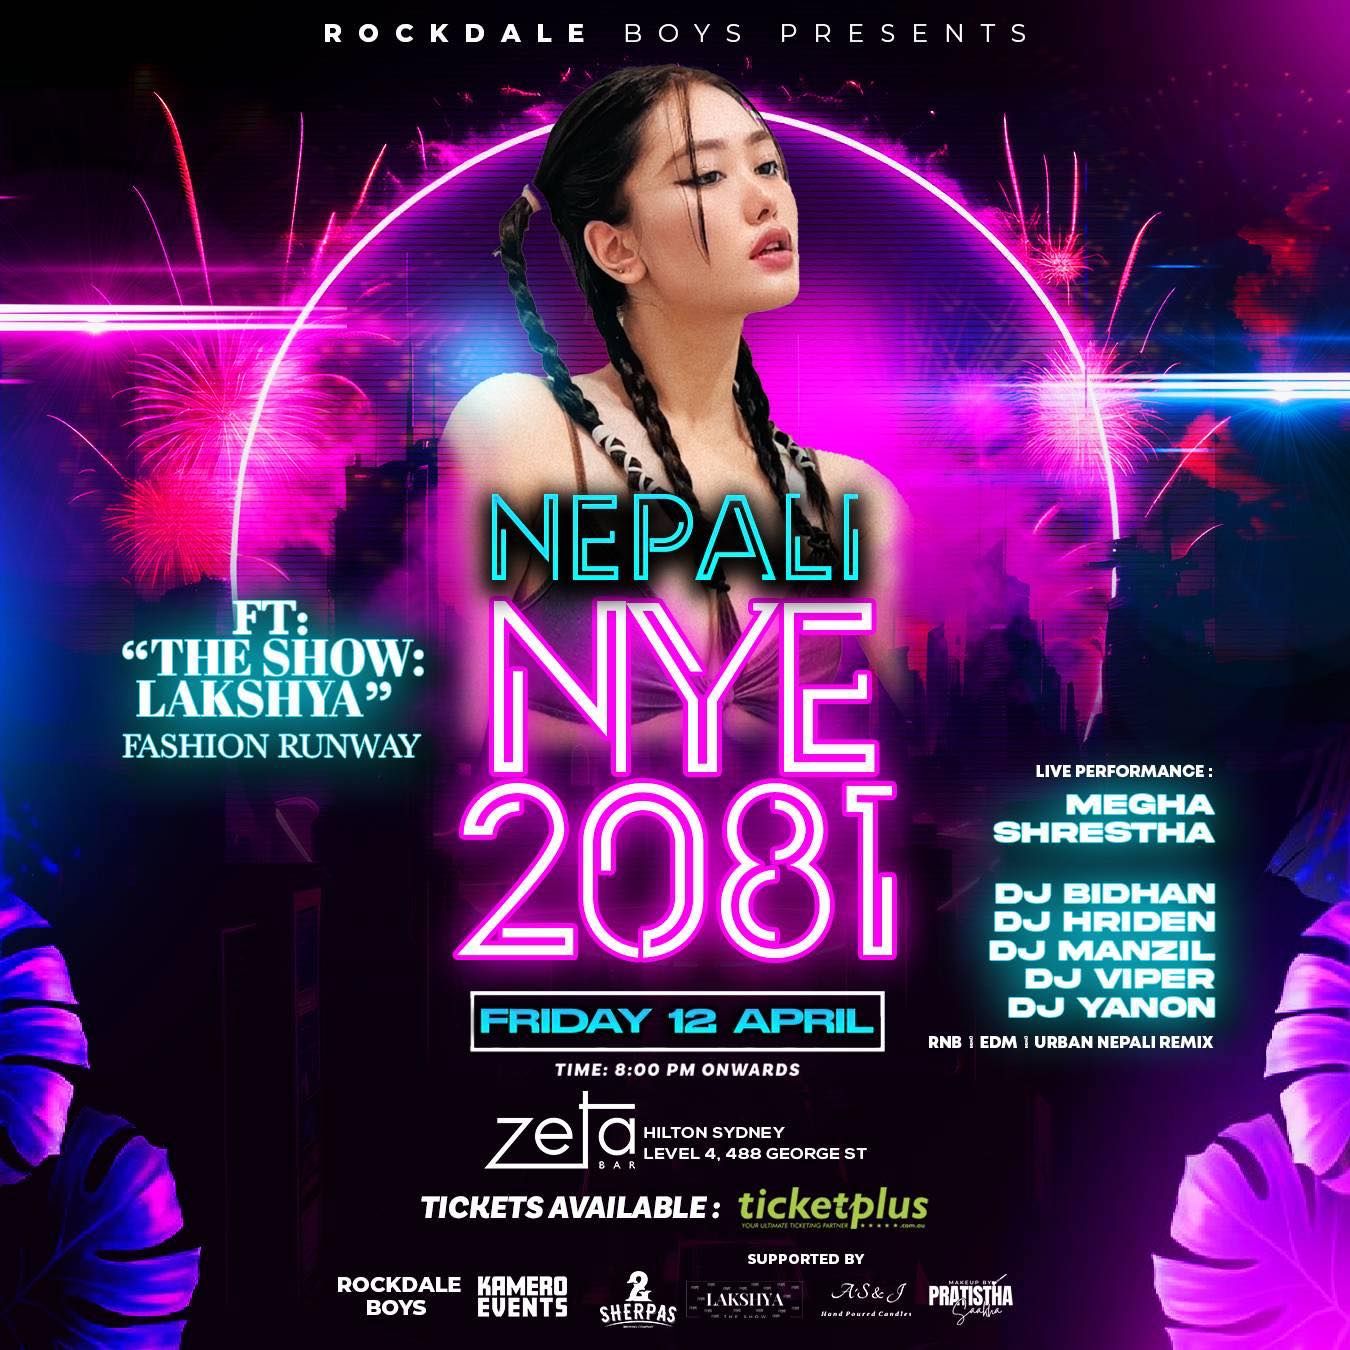 Nepali NYE 2081